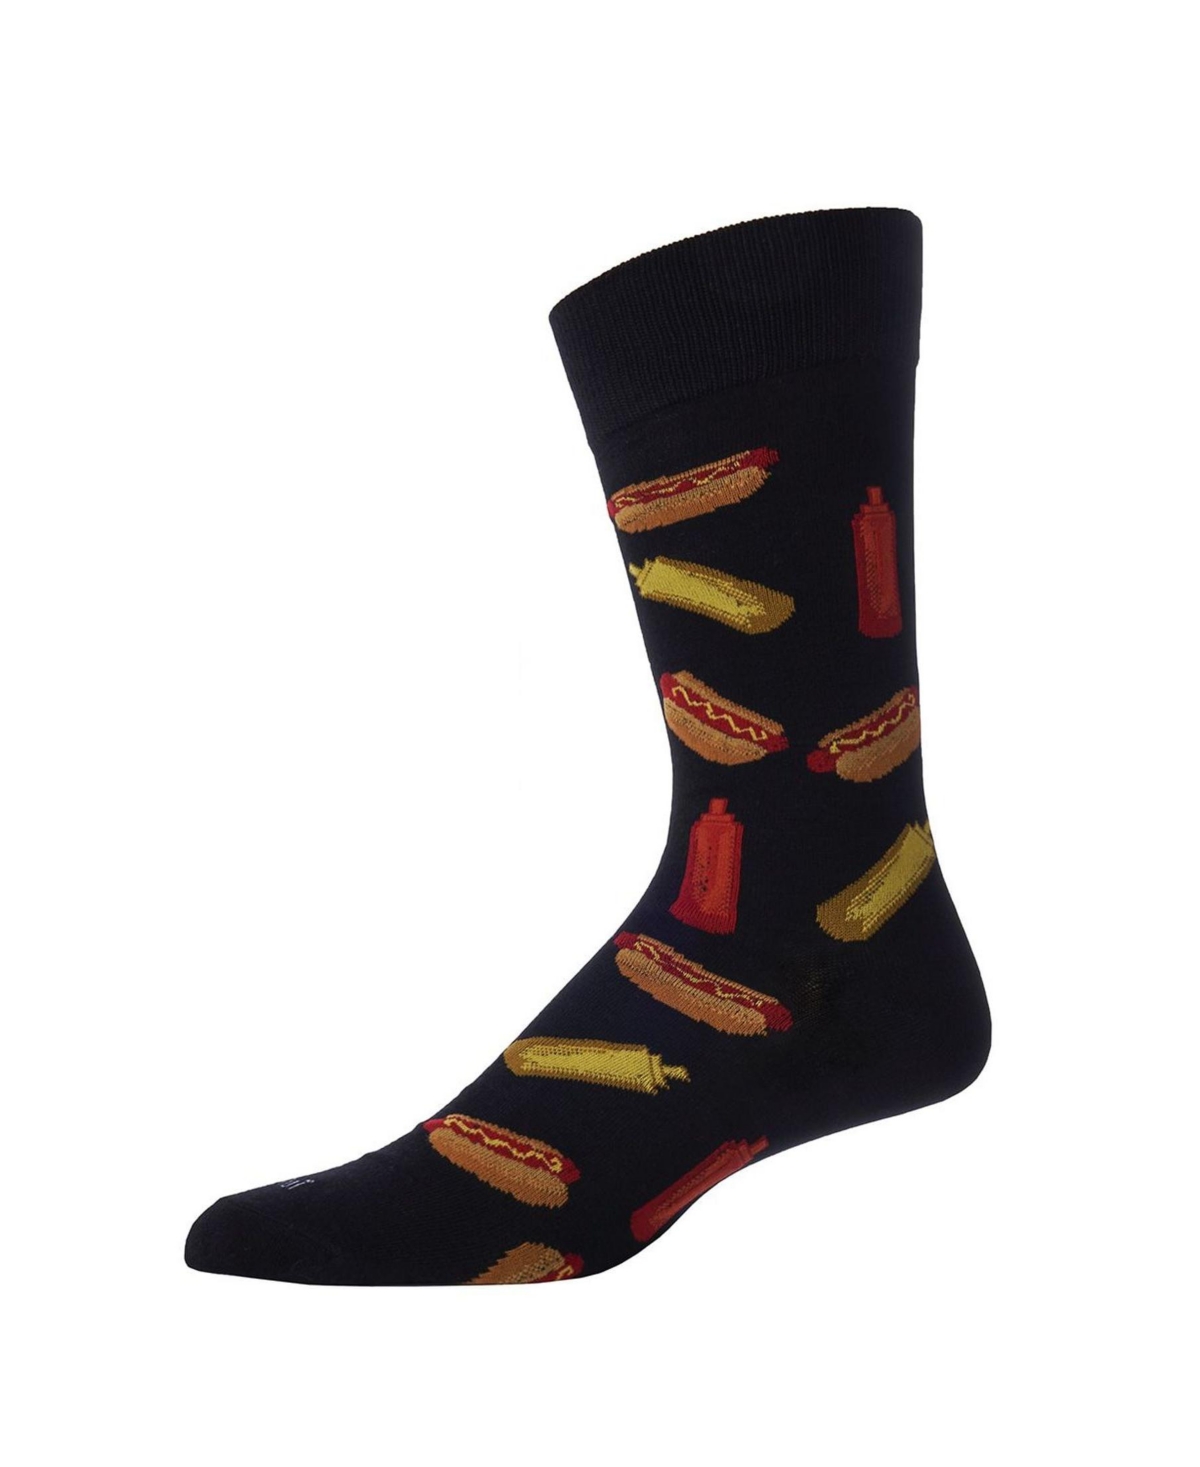 Men's Tasty Hot Dogs Novelty Crew Socks - Med Gray Heather